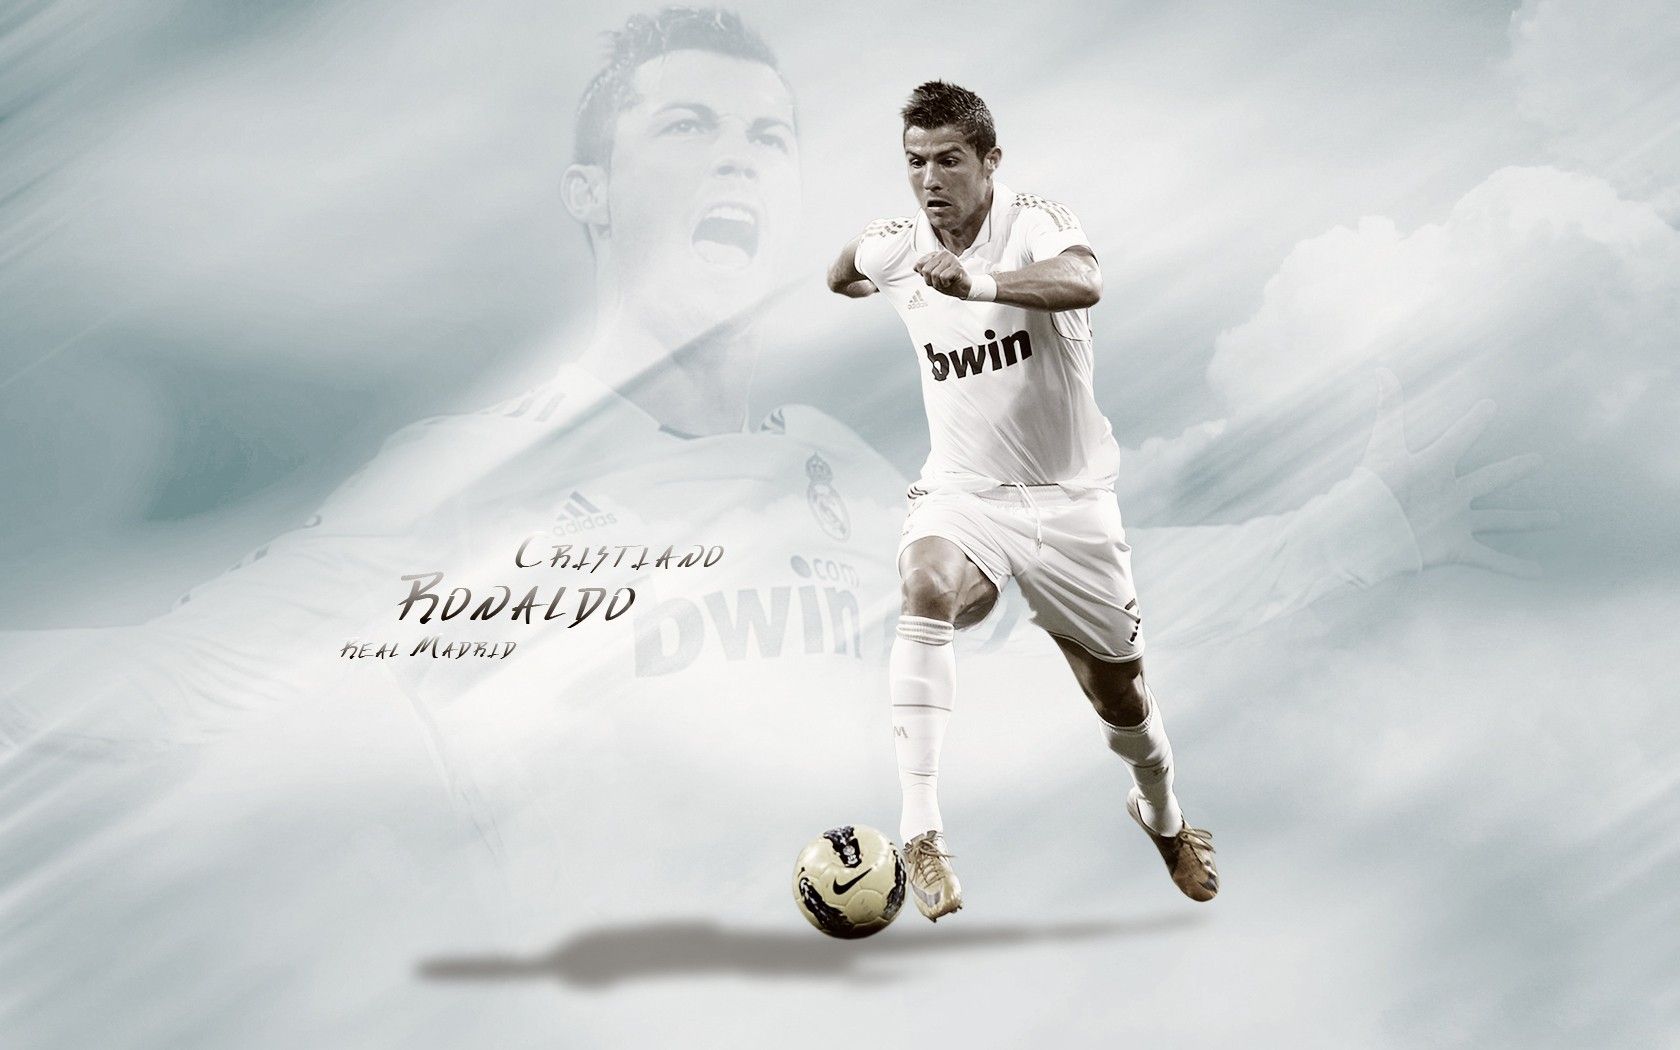 Cristiano Ronaldo Wallpaper | 1680x1050 | ID:31648